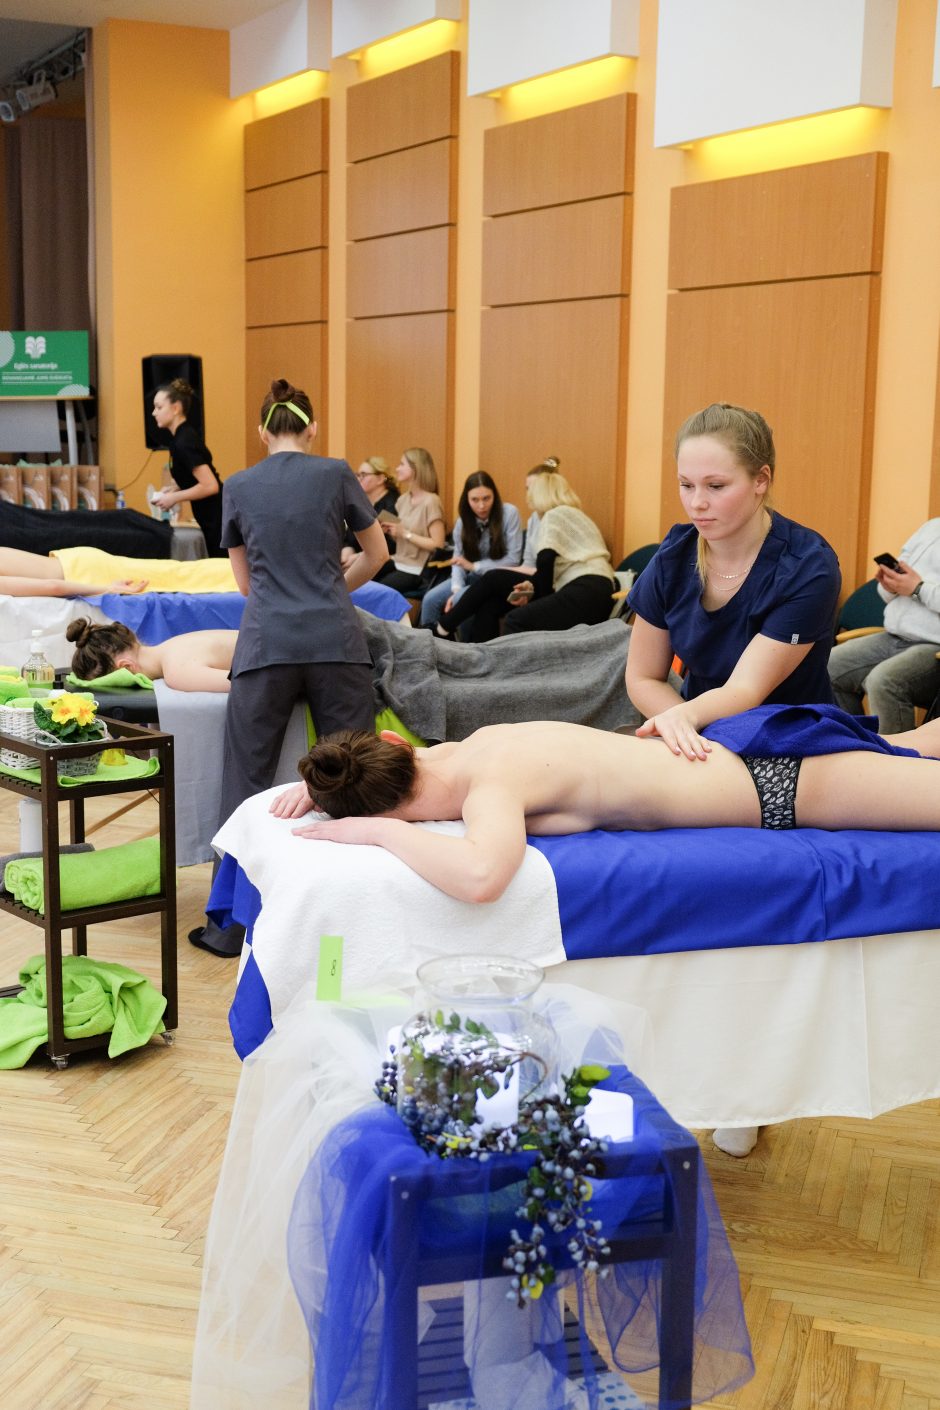 Tarptautiniame masažo čempionate – Kauno kolegijos studento pergalė